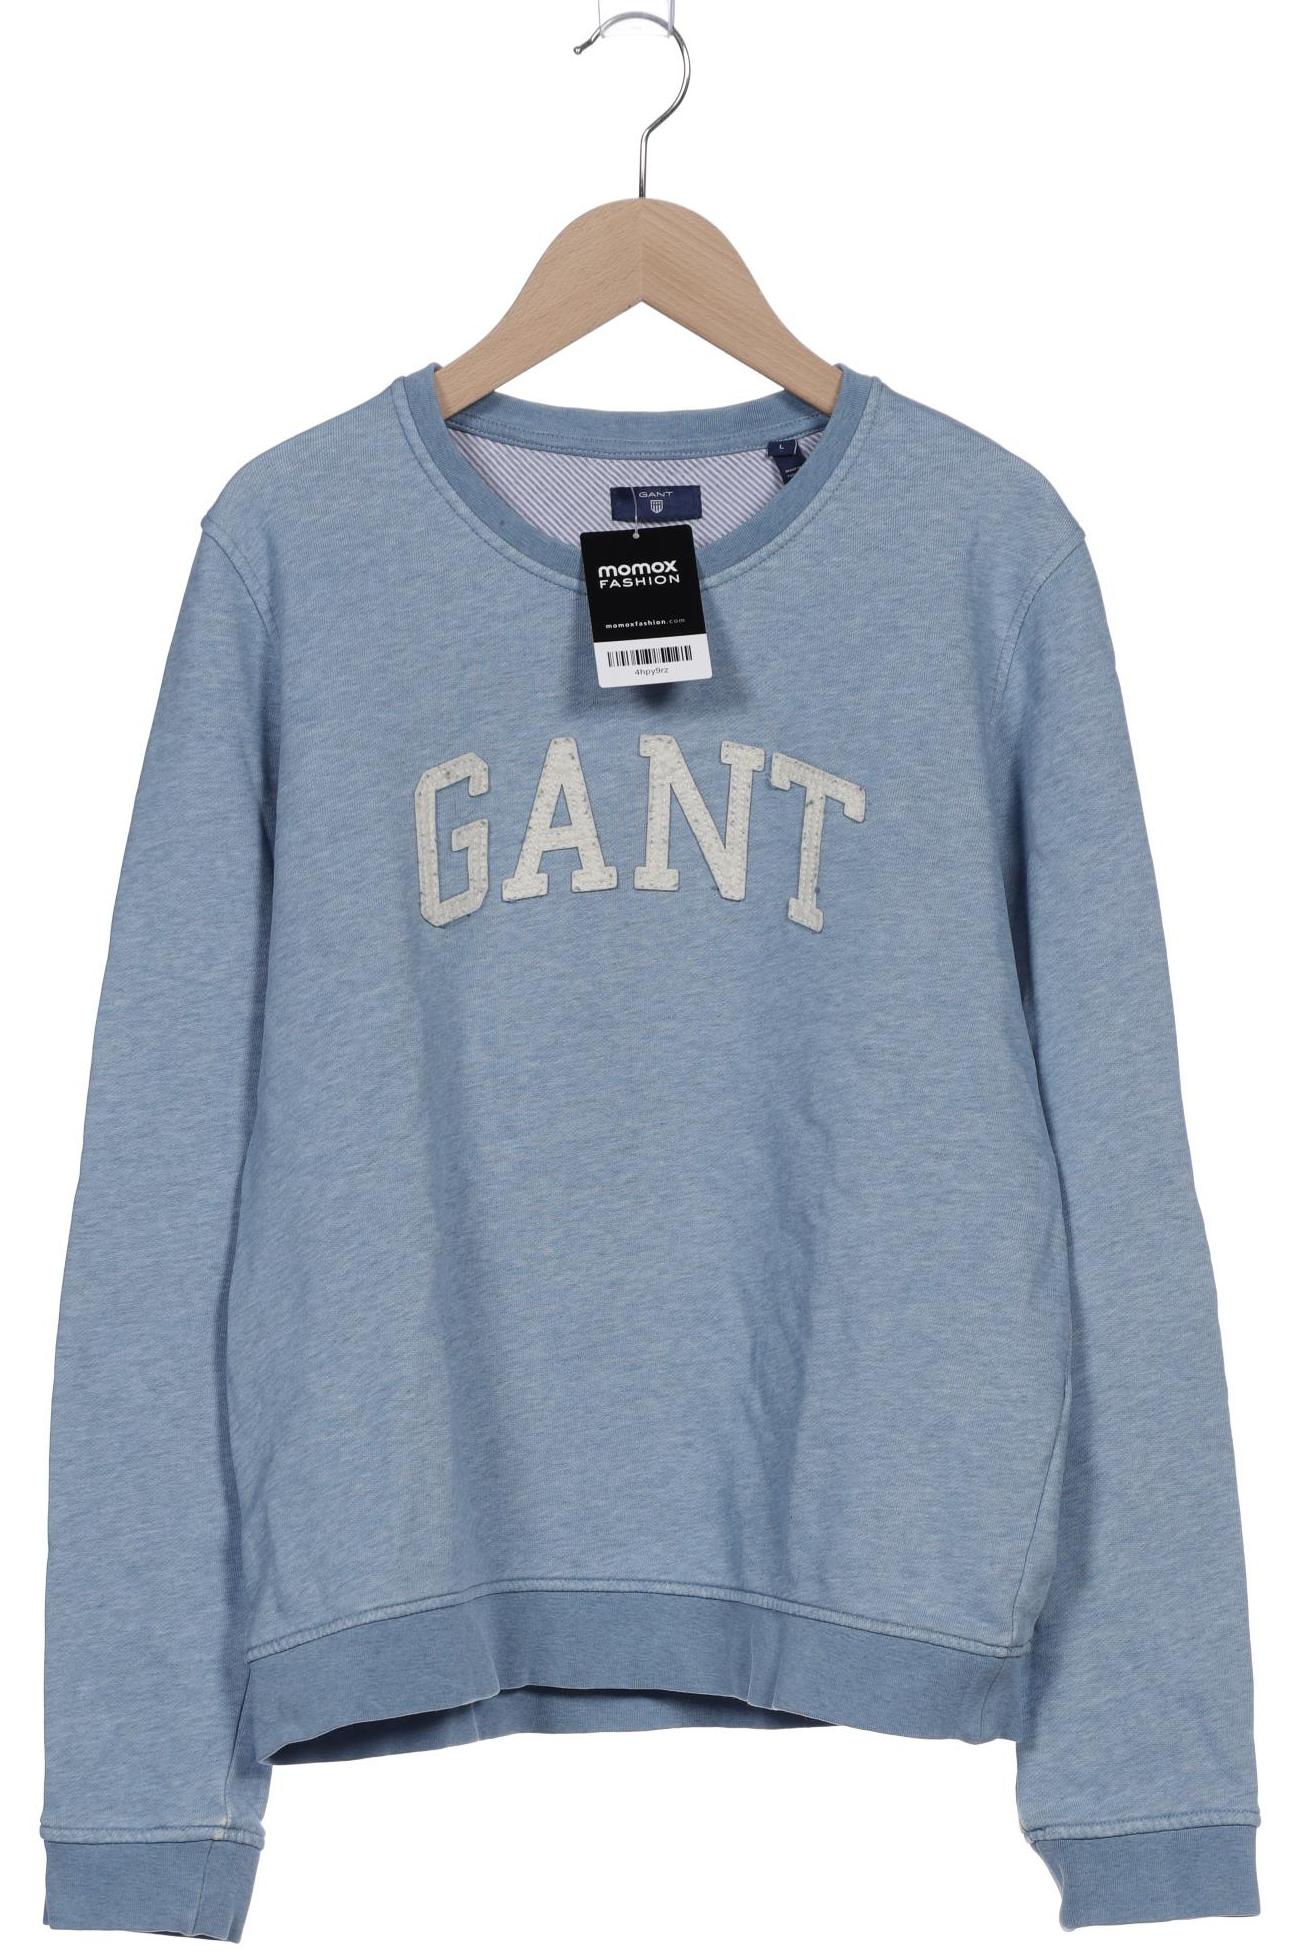 GANT Damen Sweatshirt, hellblau von Gant